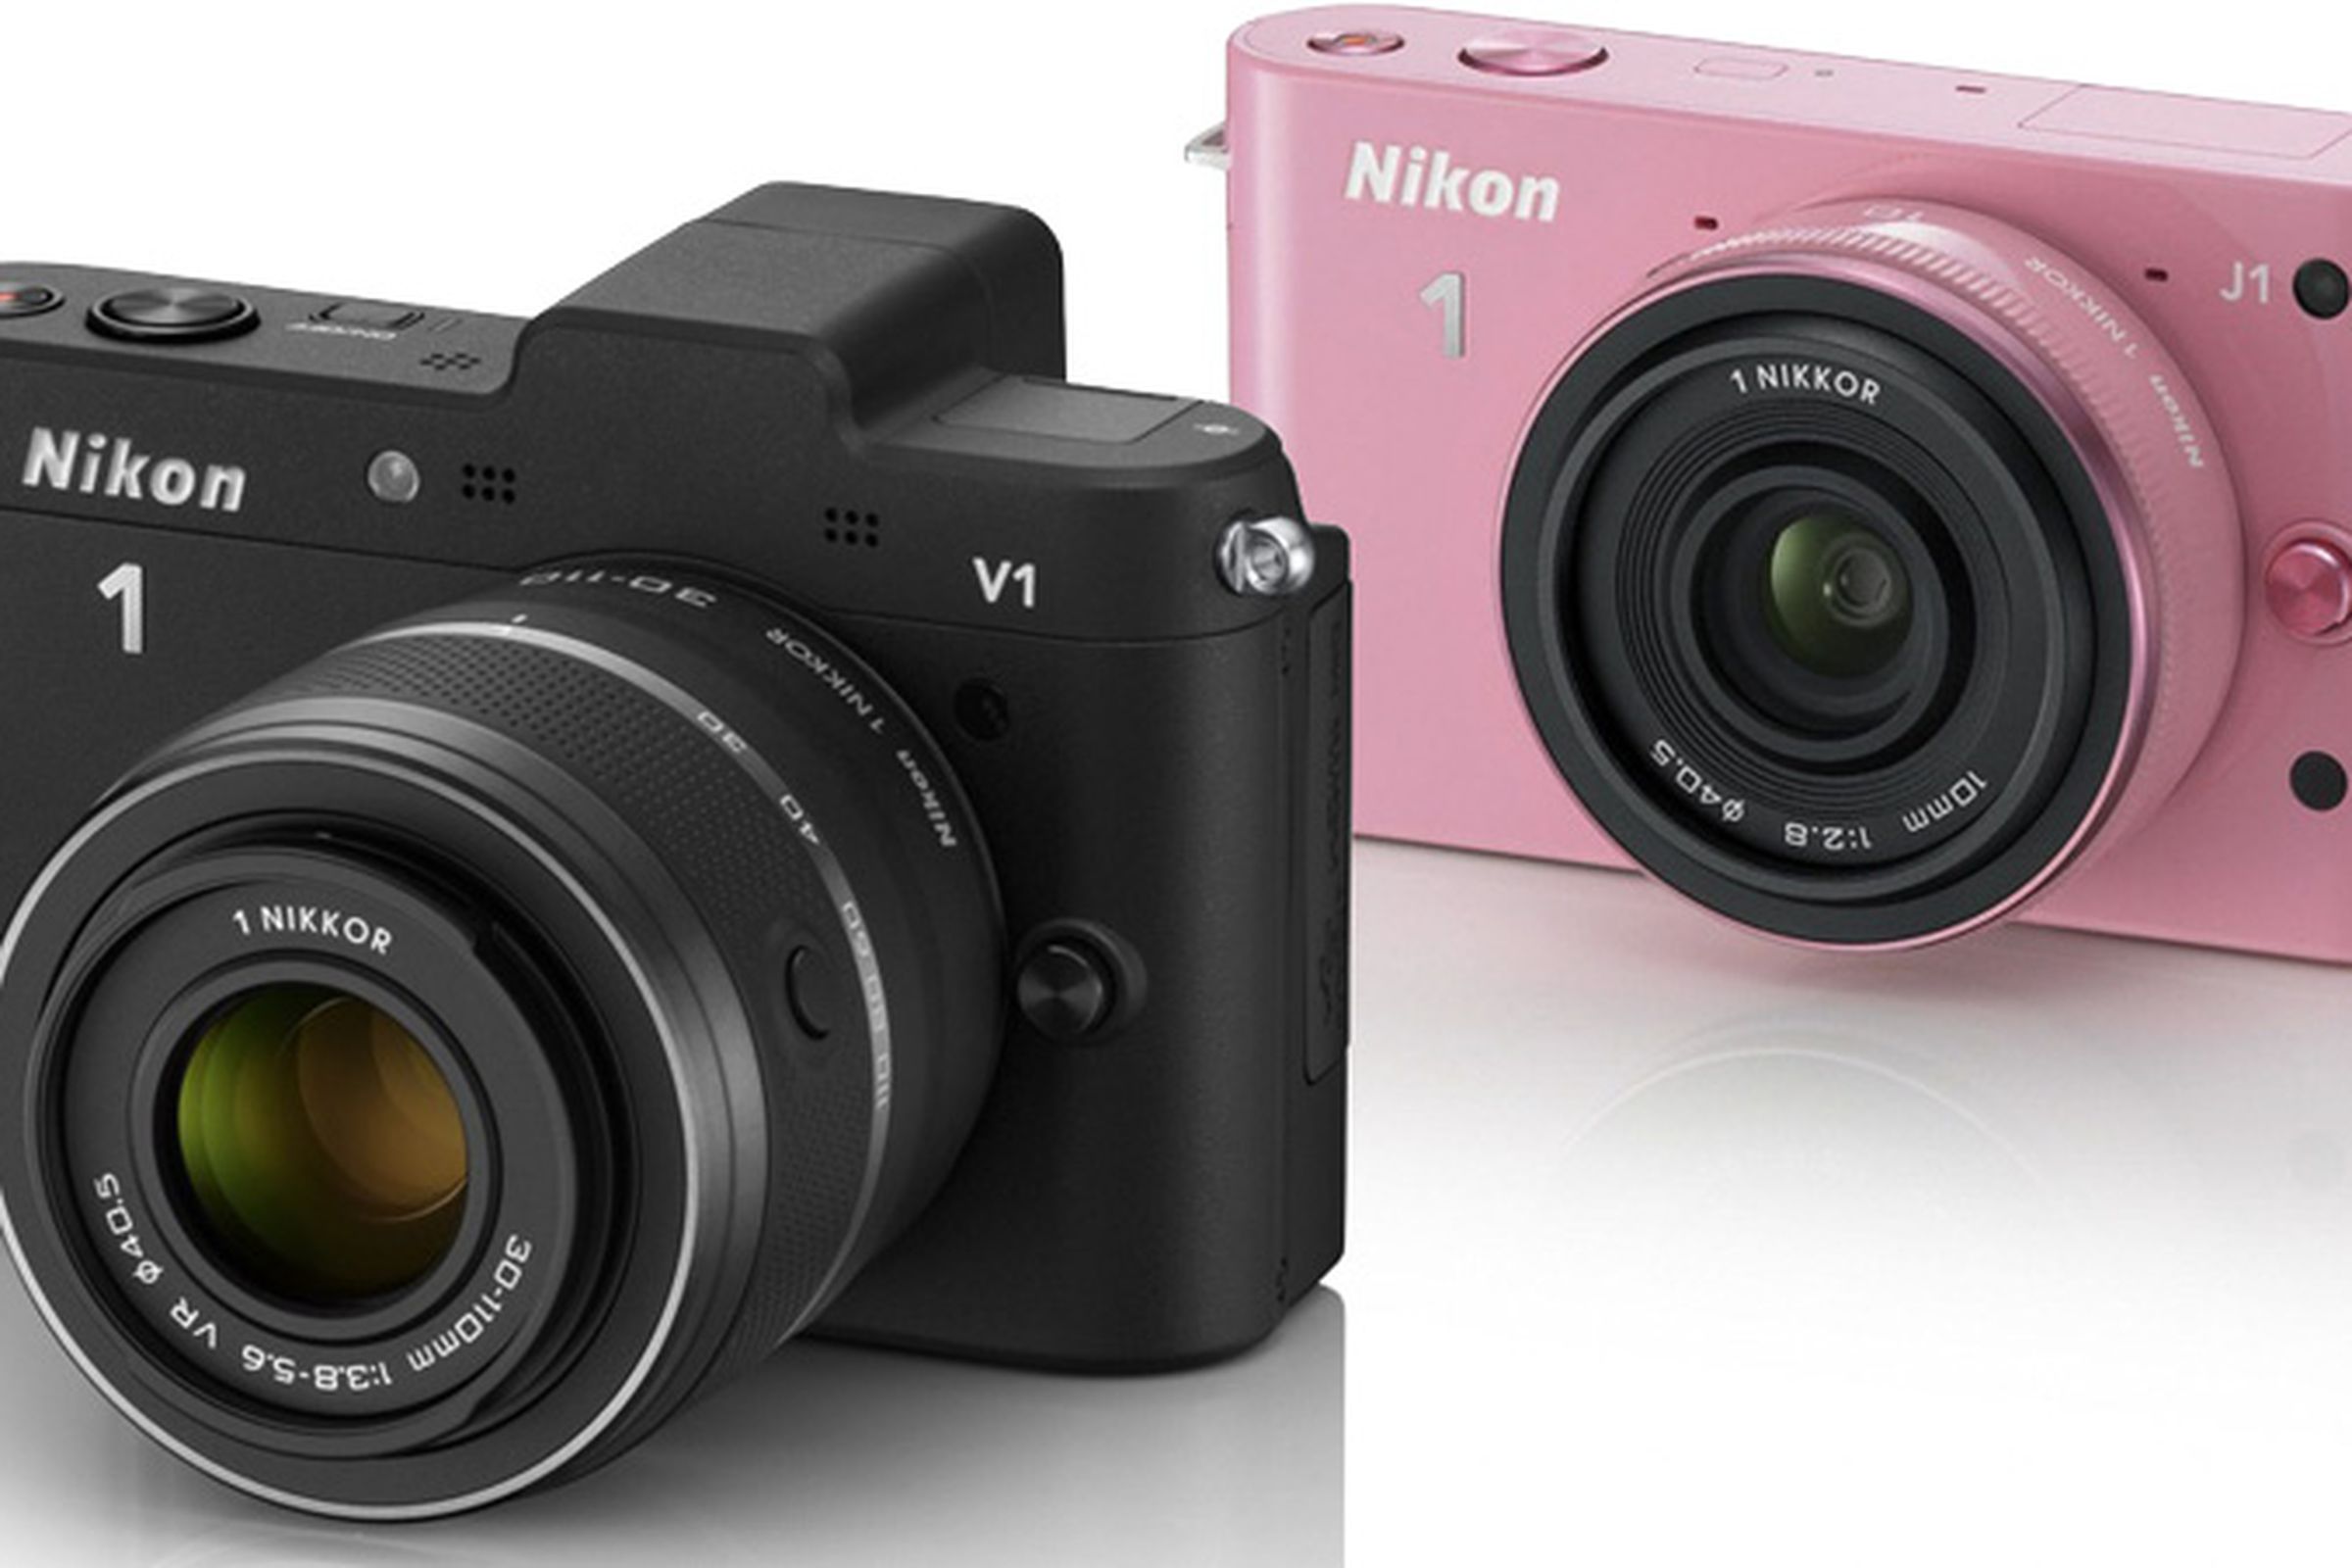 Nikon J1 and V1